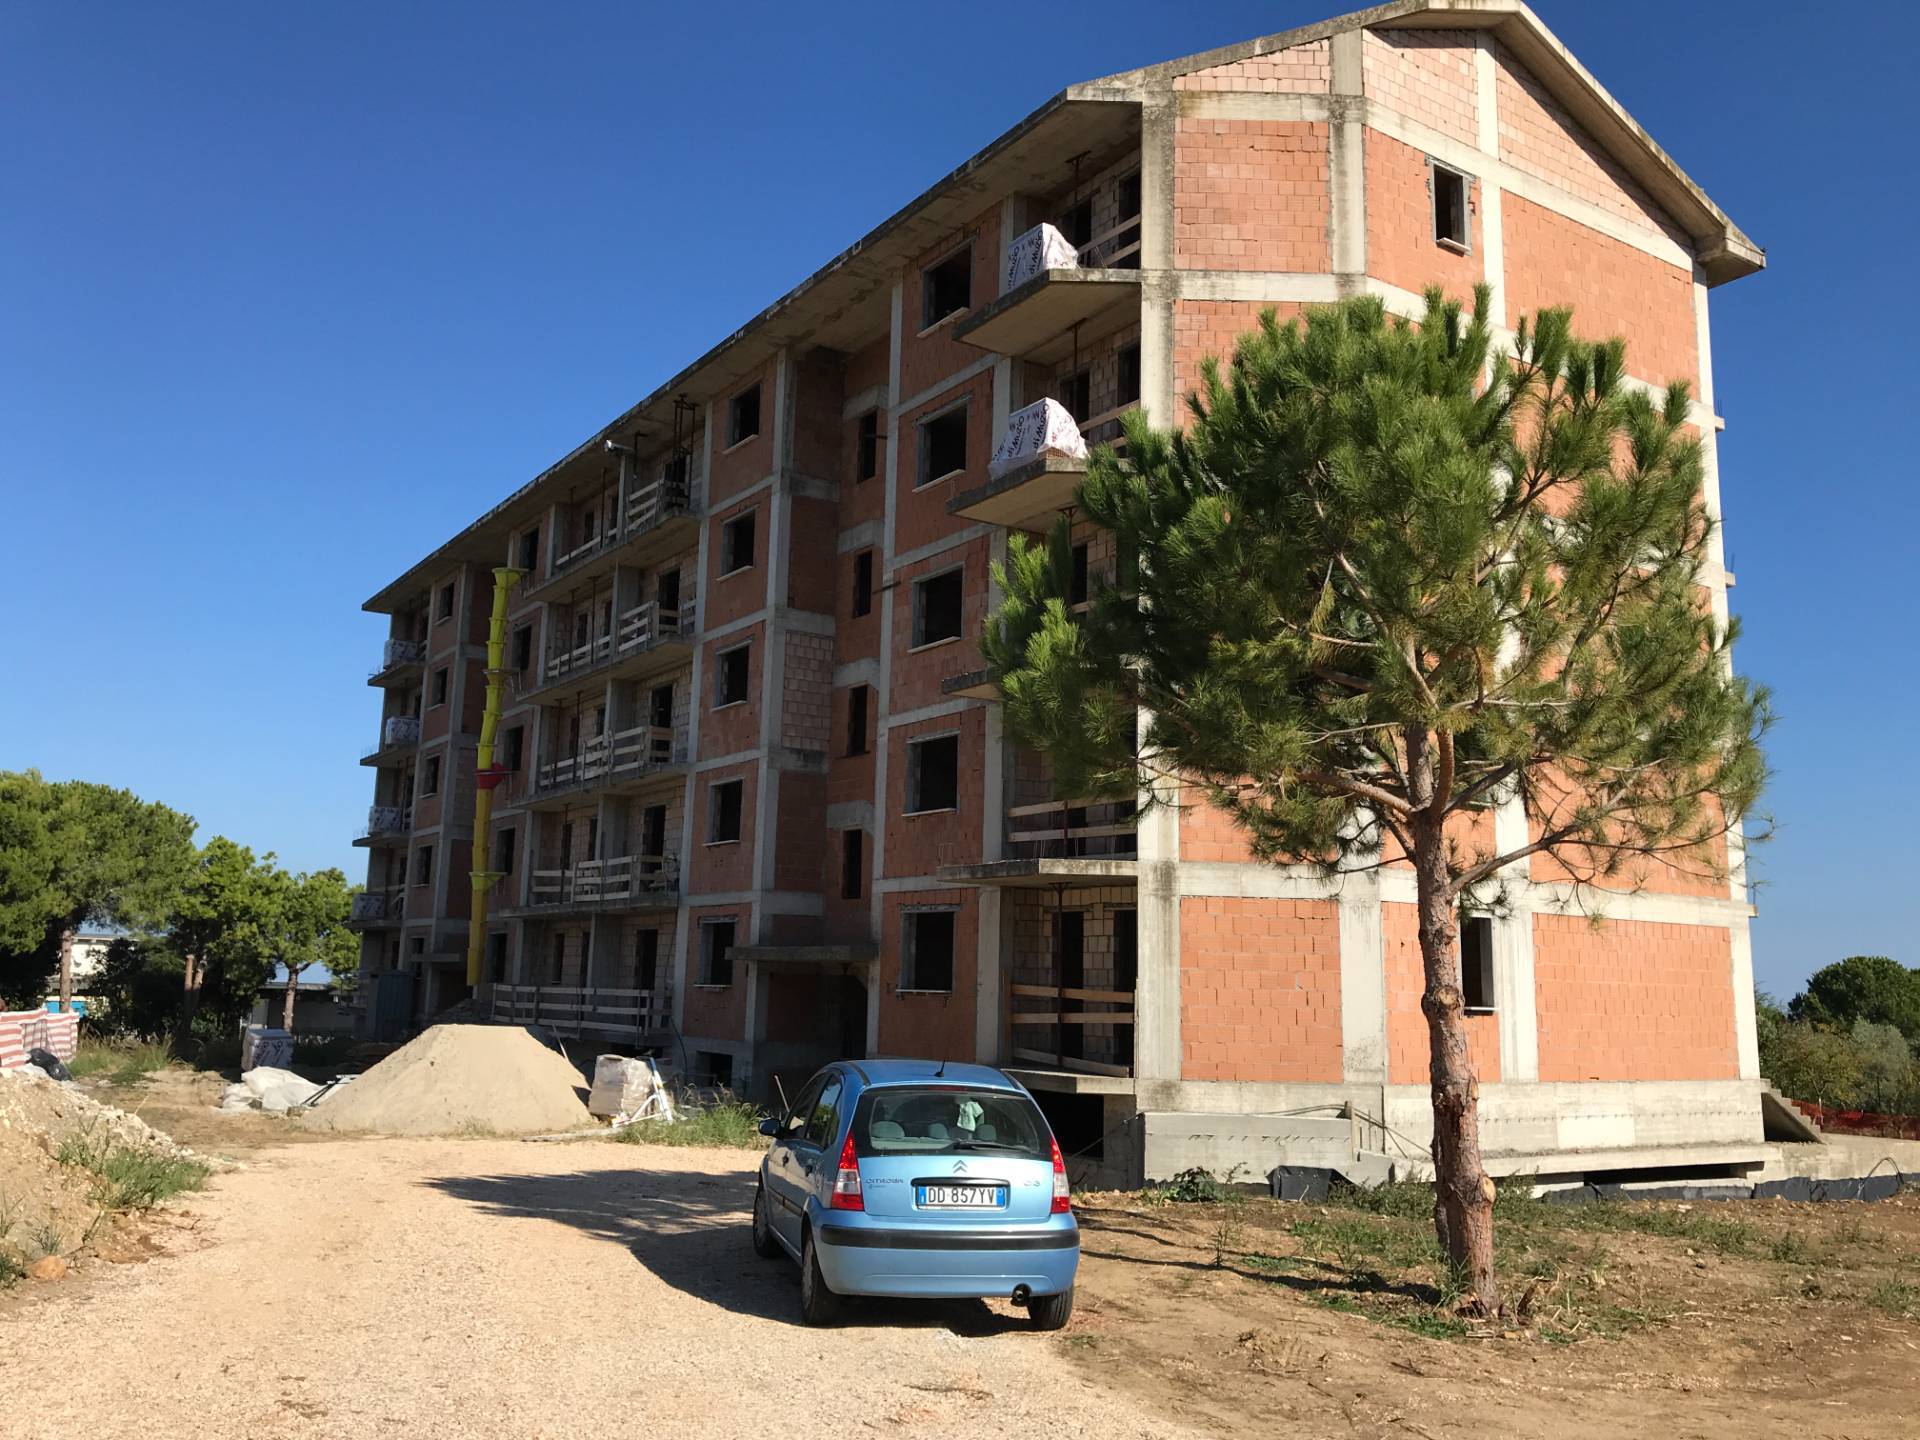 Appartamento in vendita a Vasto, 4 locali, zona Località: ZONASEMICENTRALE, prezzo € 135.000 | CambioCasa.it